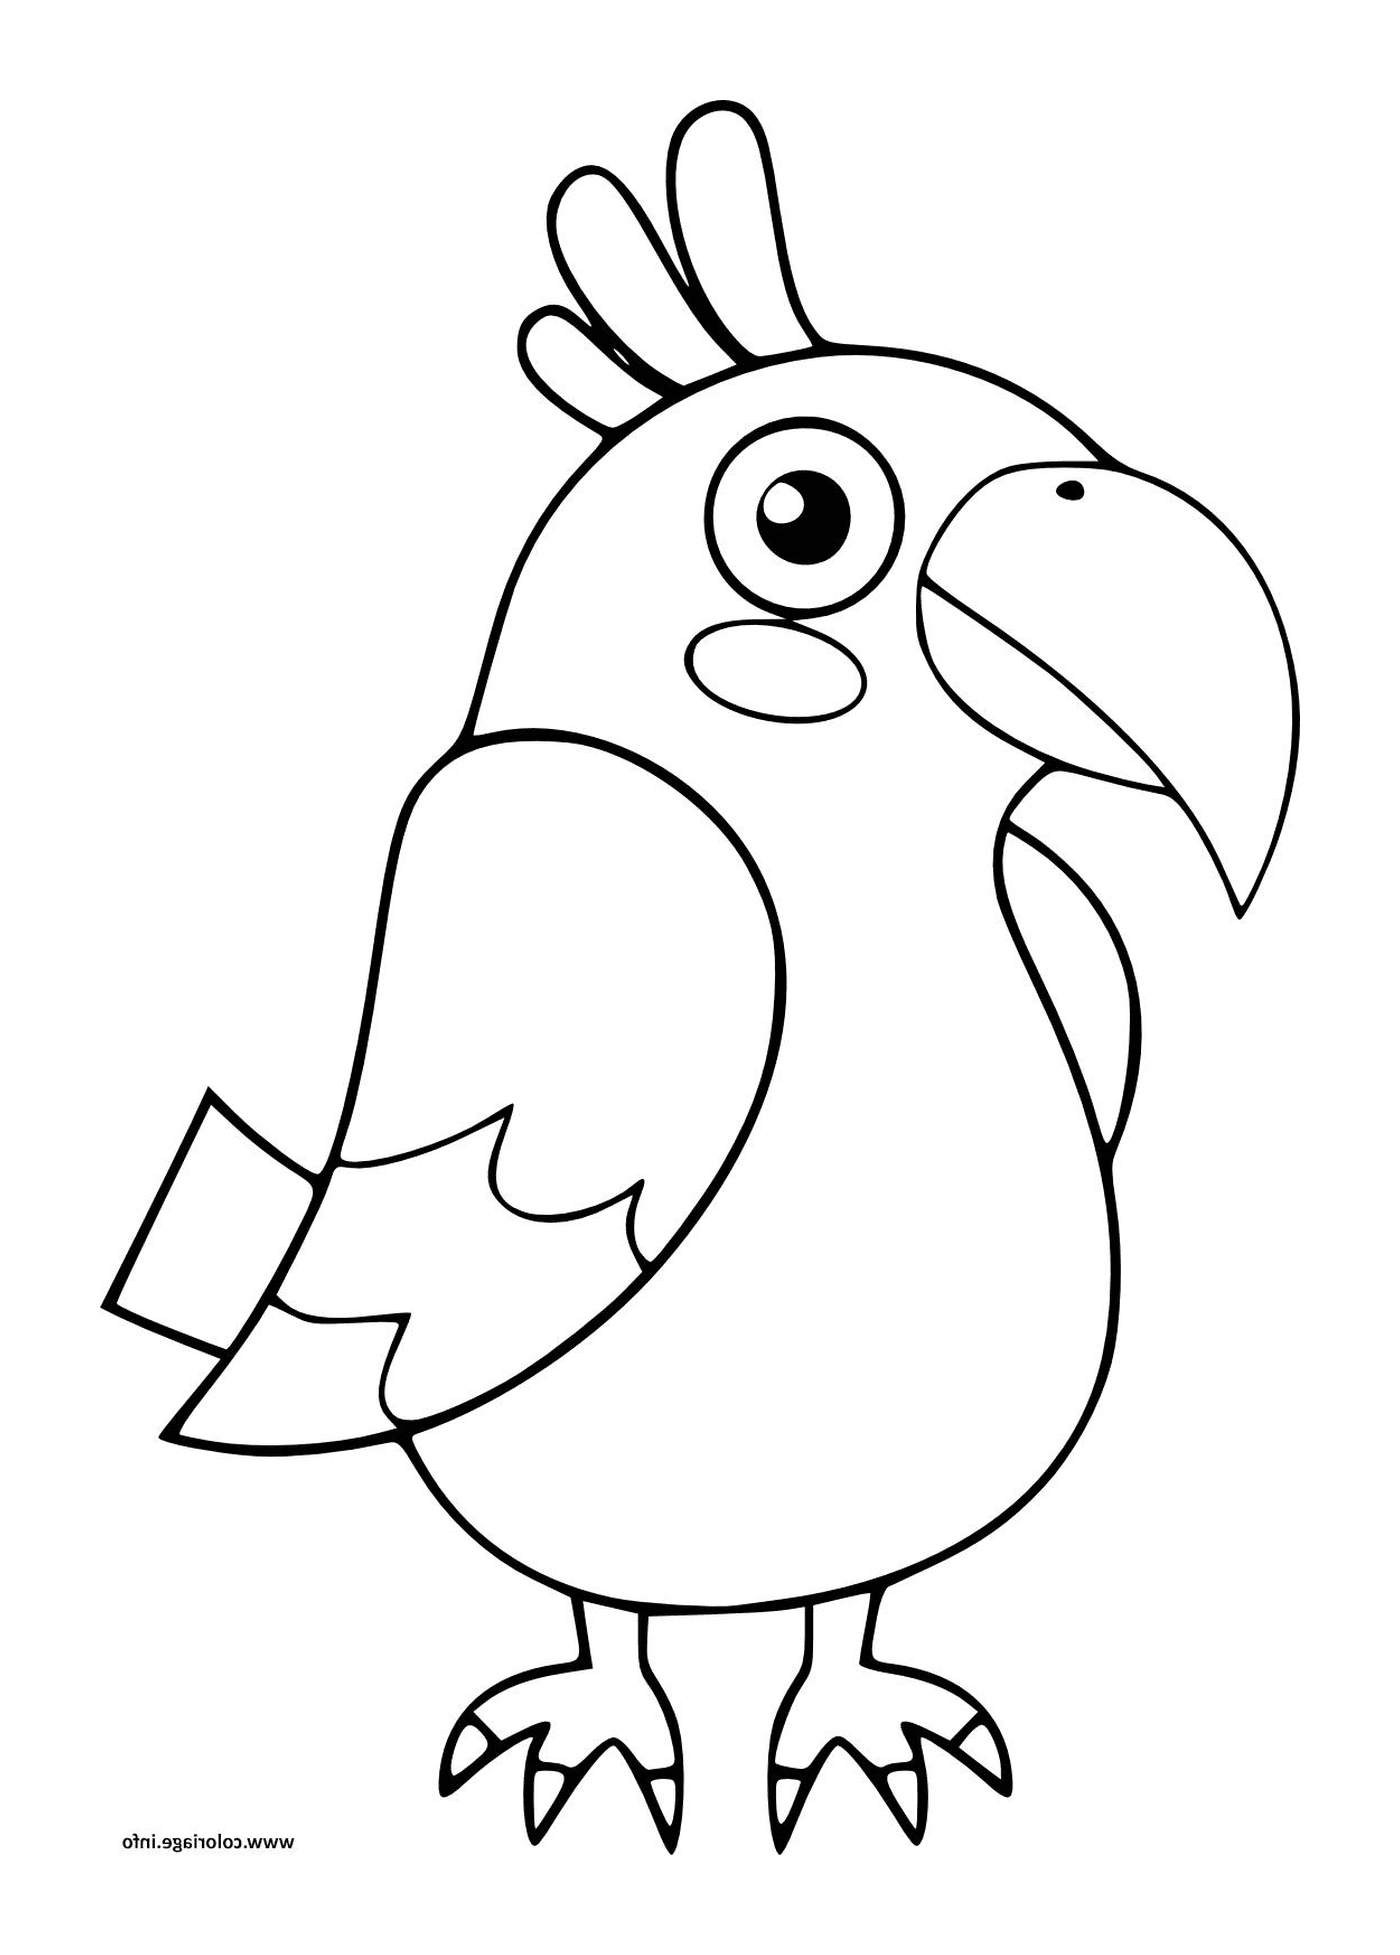   Perroquet, oiseau pour la maternelle des enfants 